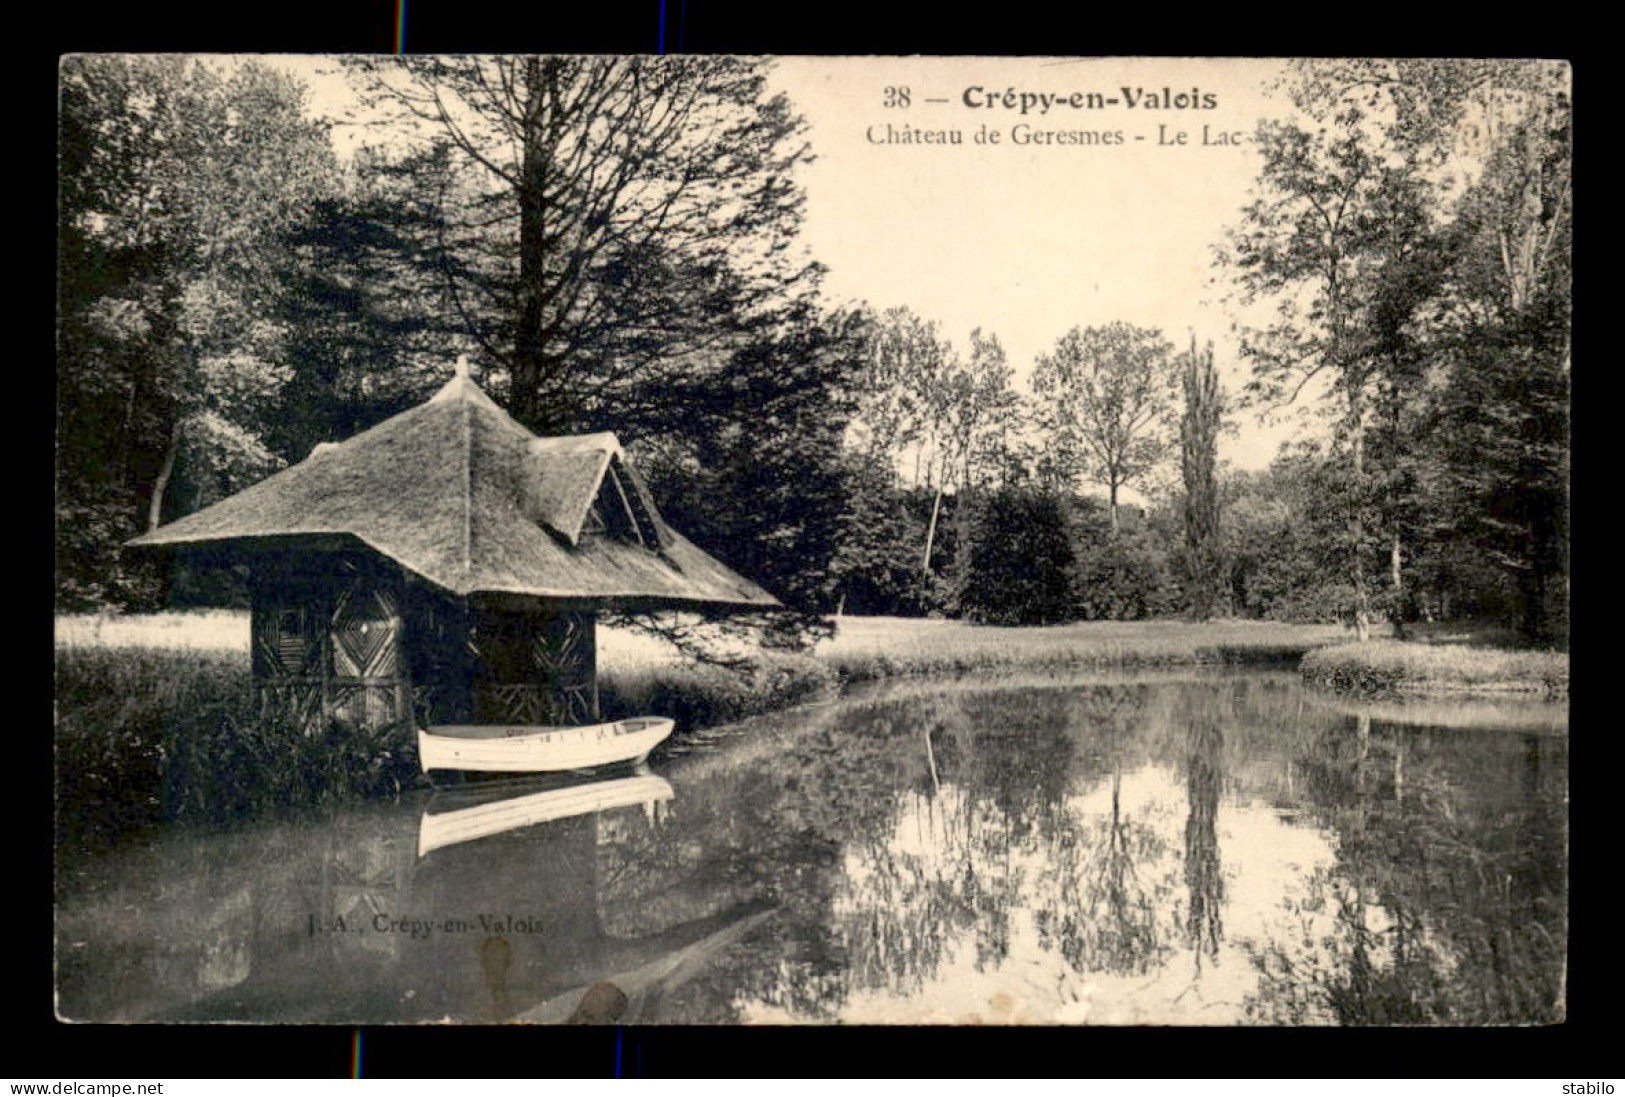 60 - CREPY-EN-VALOIS - CHATEAU DE GERESMES - LE LAC - Crepy En Valois